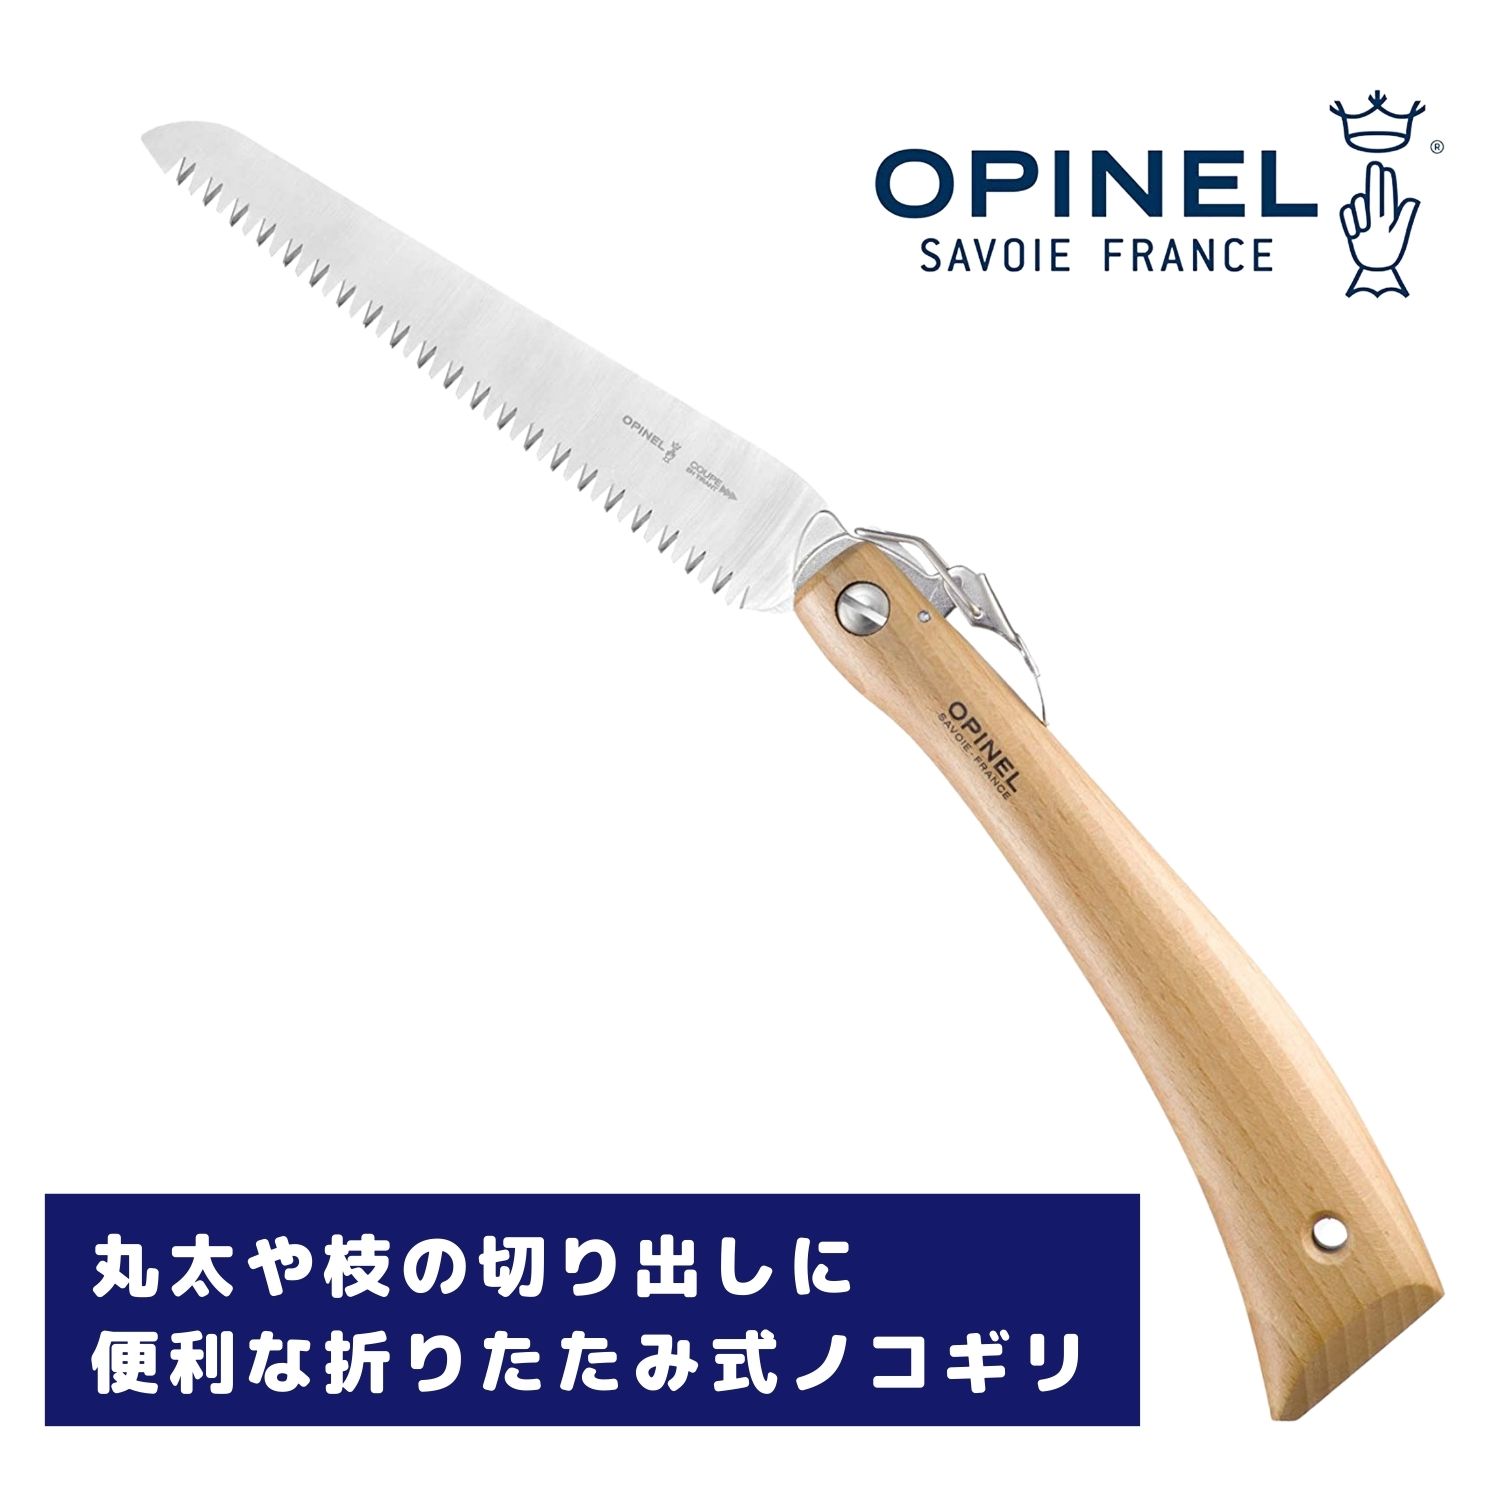 OPINEL(オピネル) フォールディングノコギリ #18 41516　ステンレス オピネルナイフ 折り畳み式 かっこいい 携帯しやすい 木柄